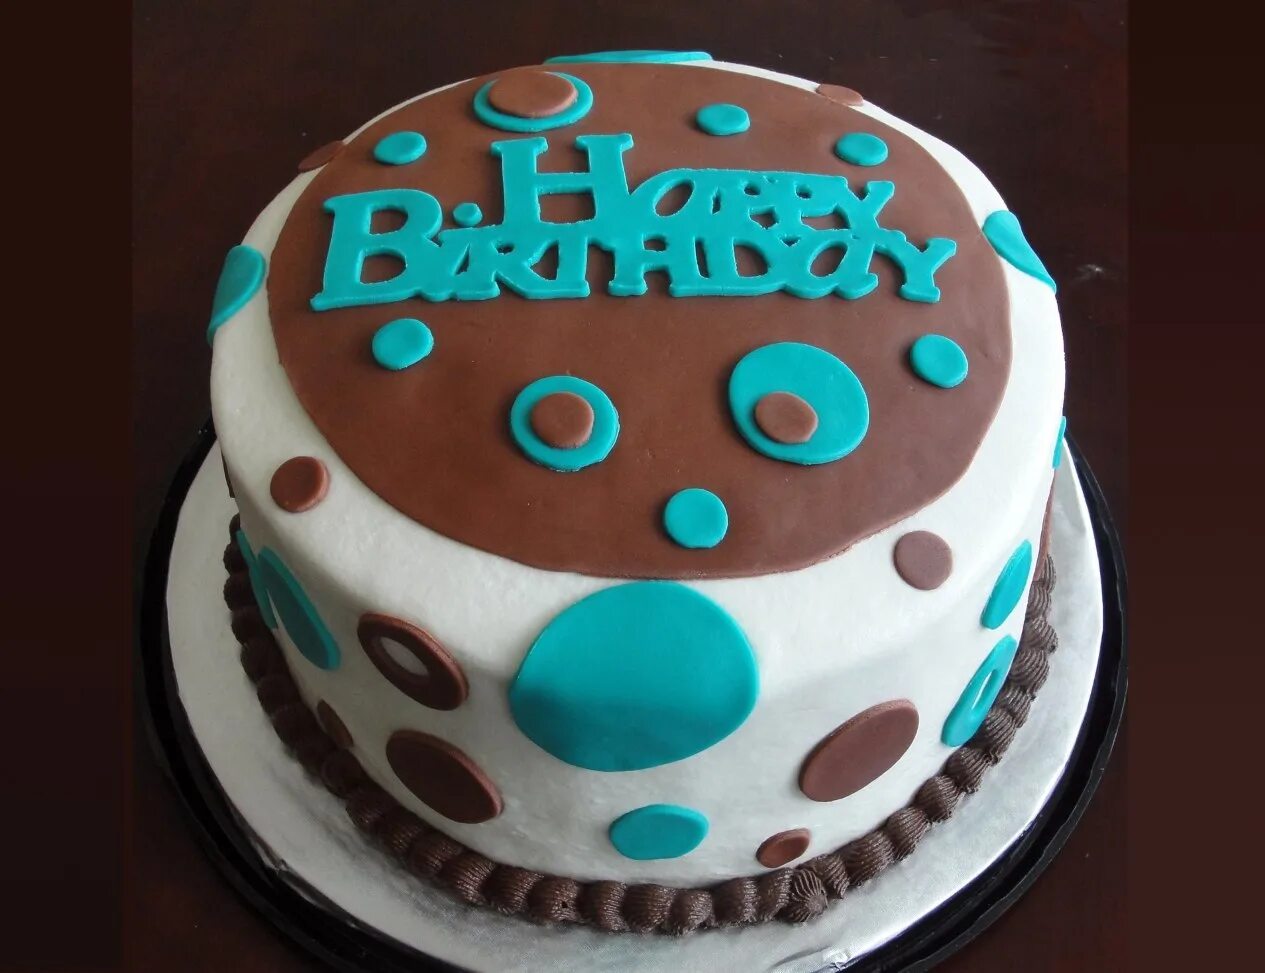 День рождение 27 12. Торт с днем рождения!. Торт на юбилей. Обычный торт на день рождения. Торт с надписью.